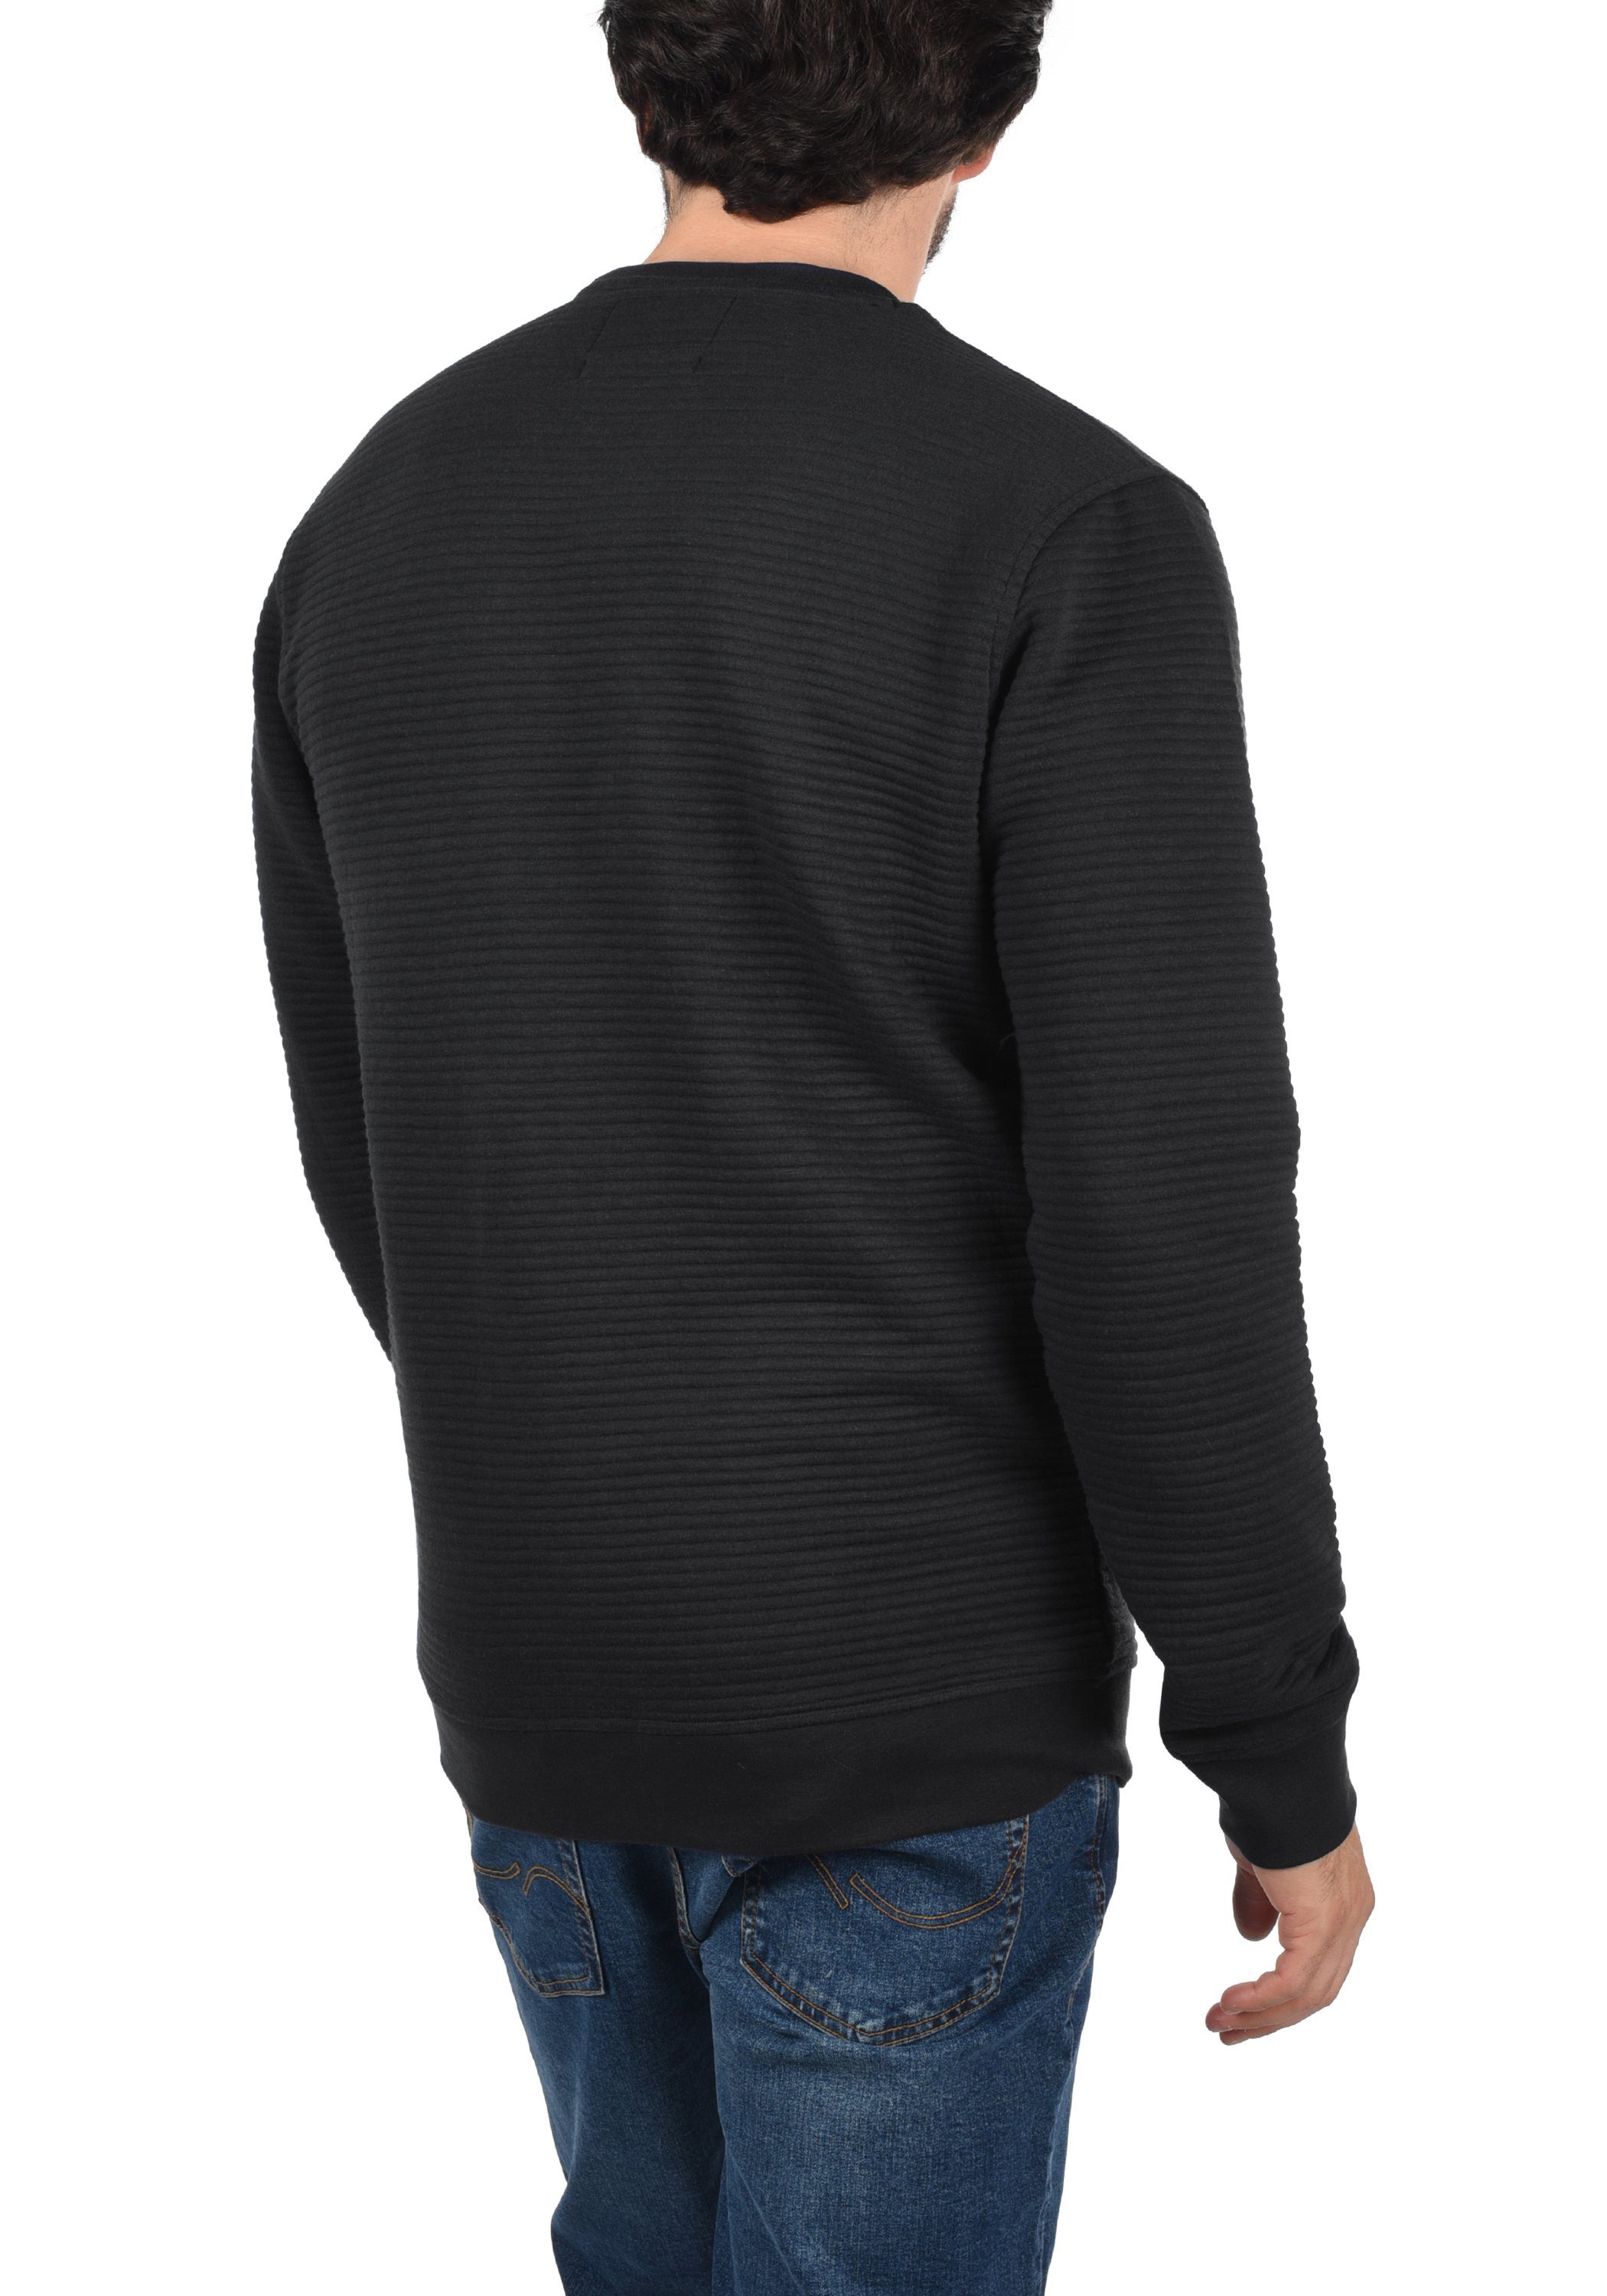 Sweatshirt Indicode Black Sweatpulli IDBronn (999)